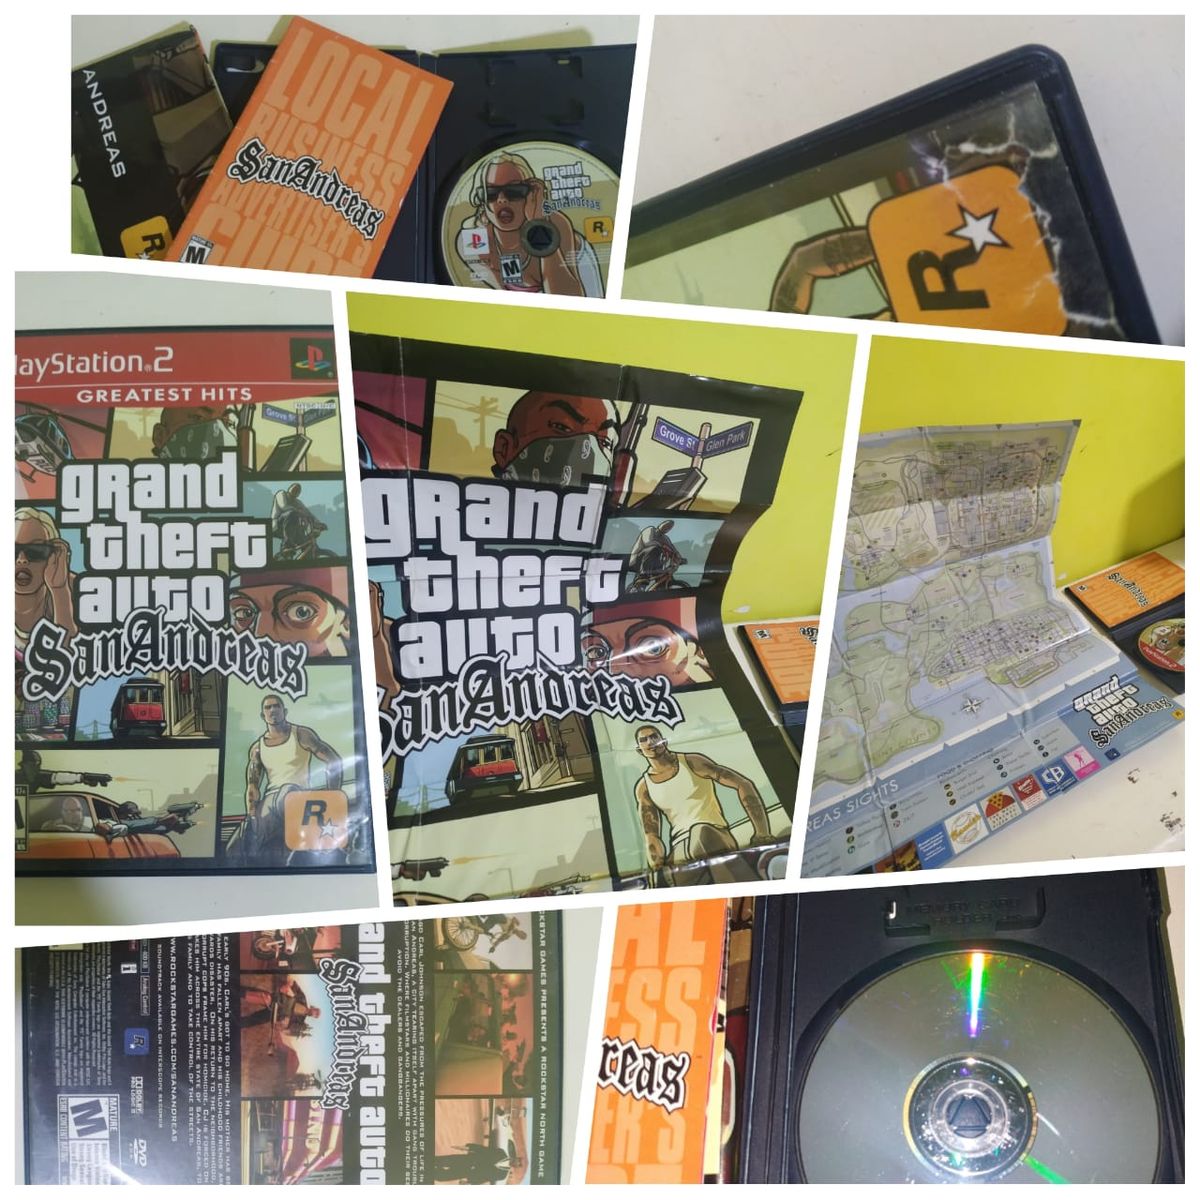 Jogo Grand Theft Auto: San Andreas (gta) Hits - PS3 em Promoção na